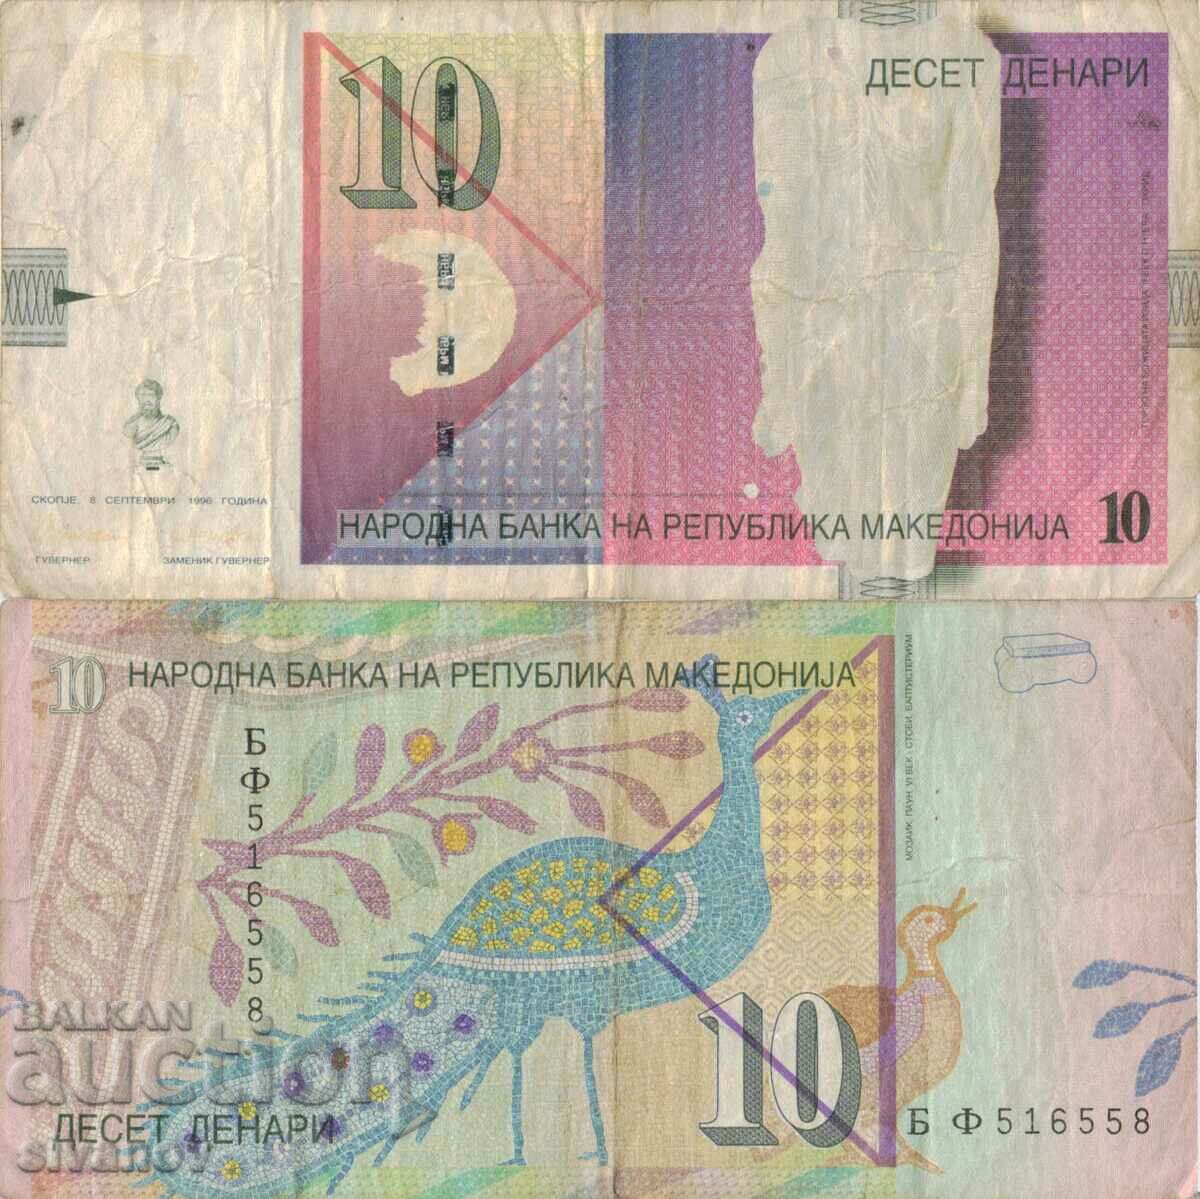 Μακεδονία 10 denar 1996 τραπεζογραμμάτιο #5224